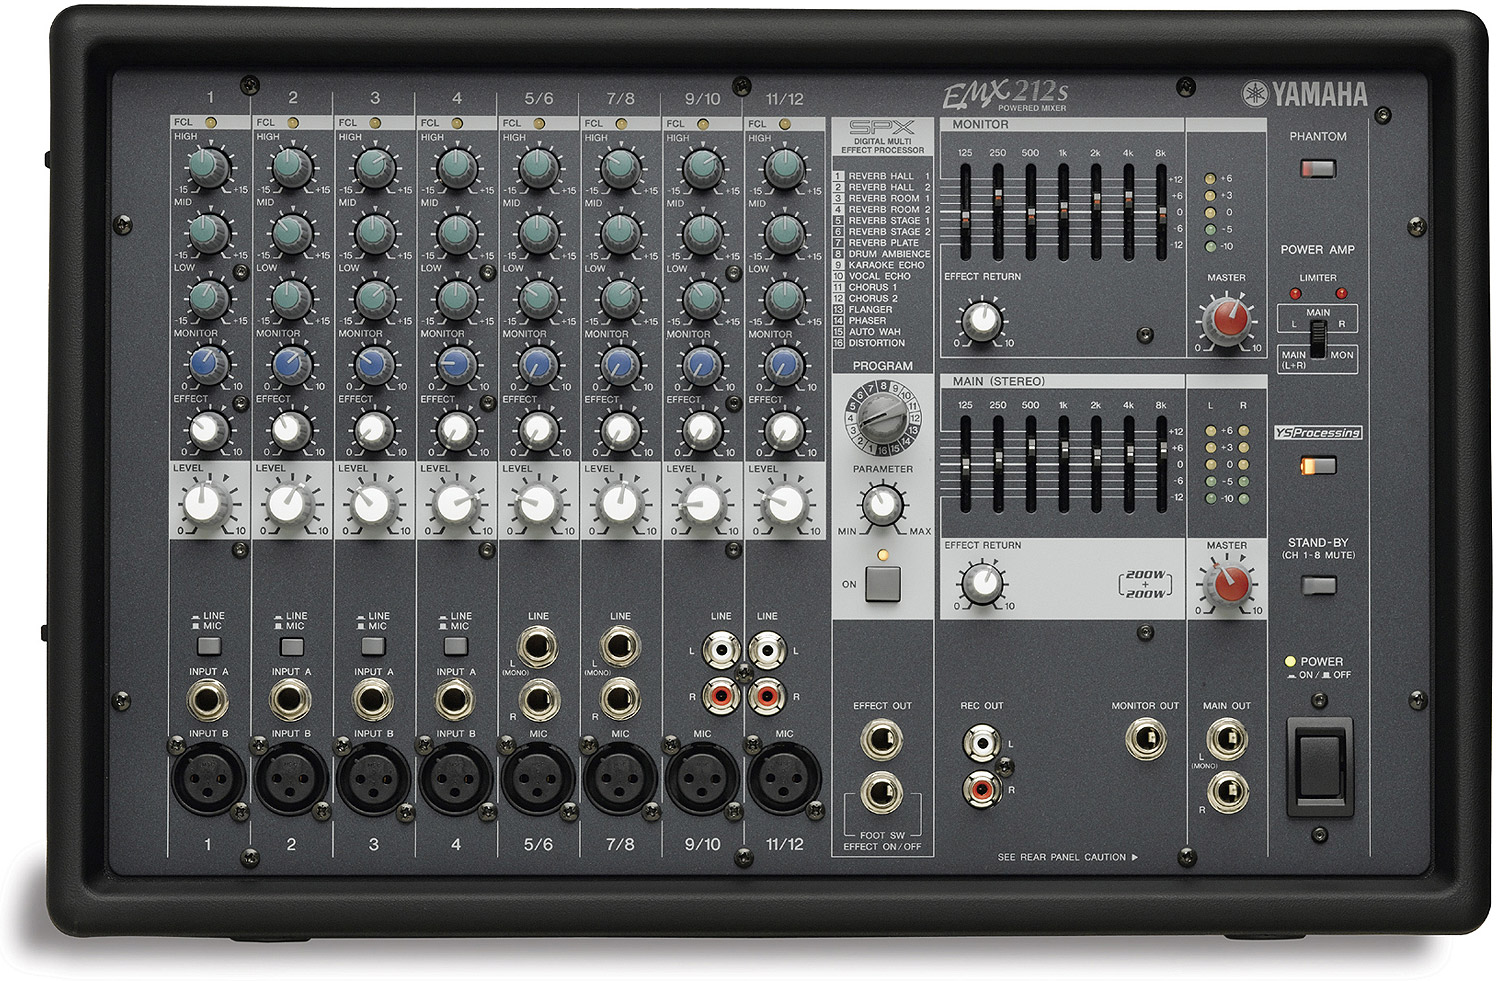 Yamaha EMX212S Mixer